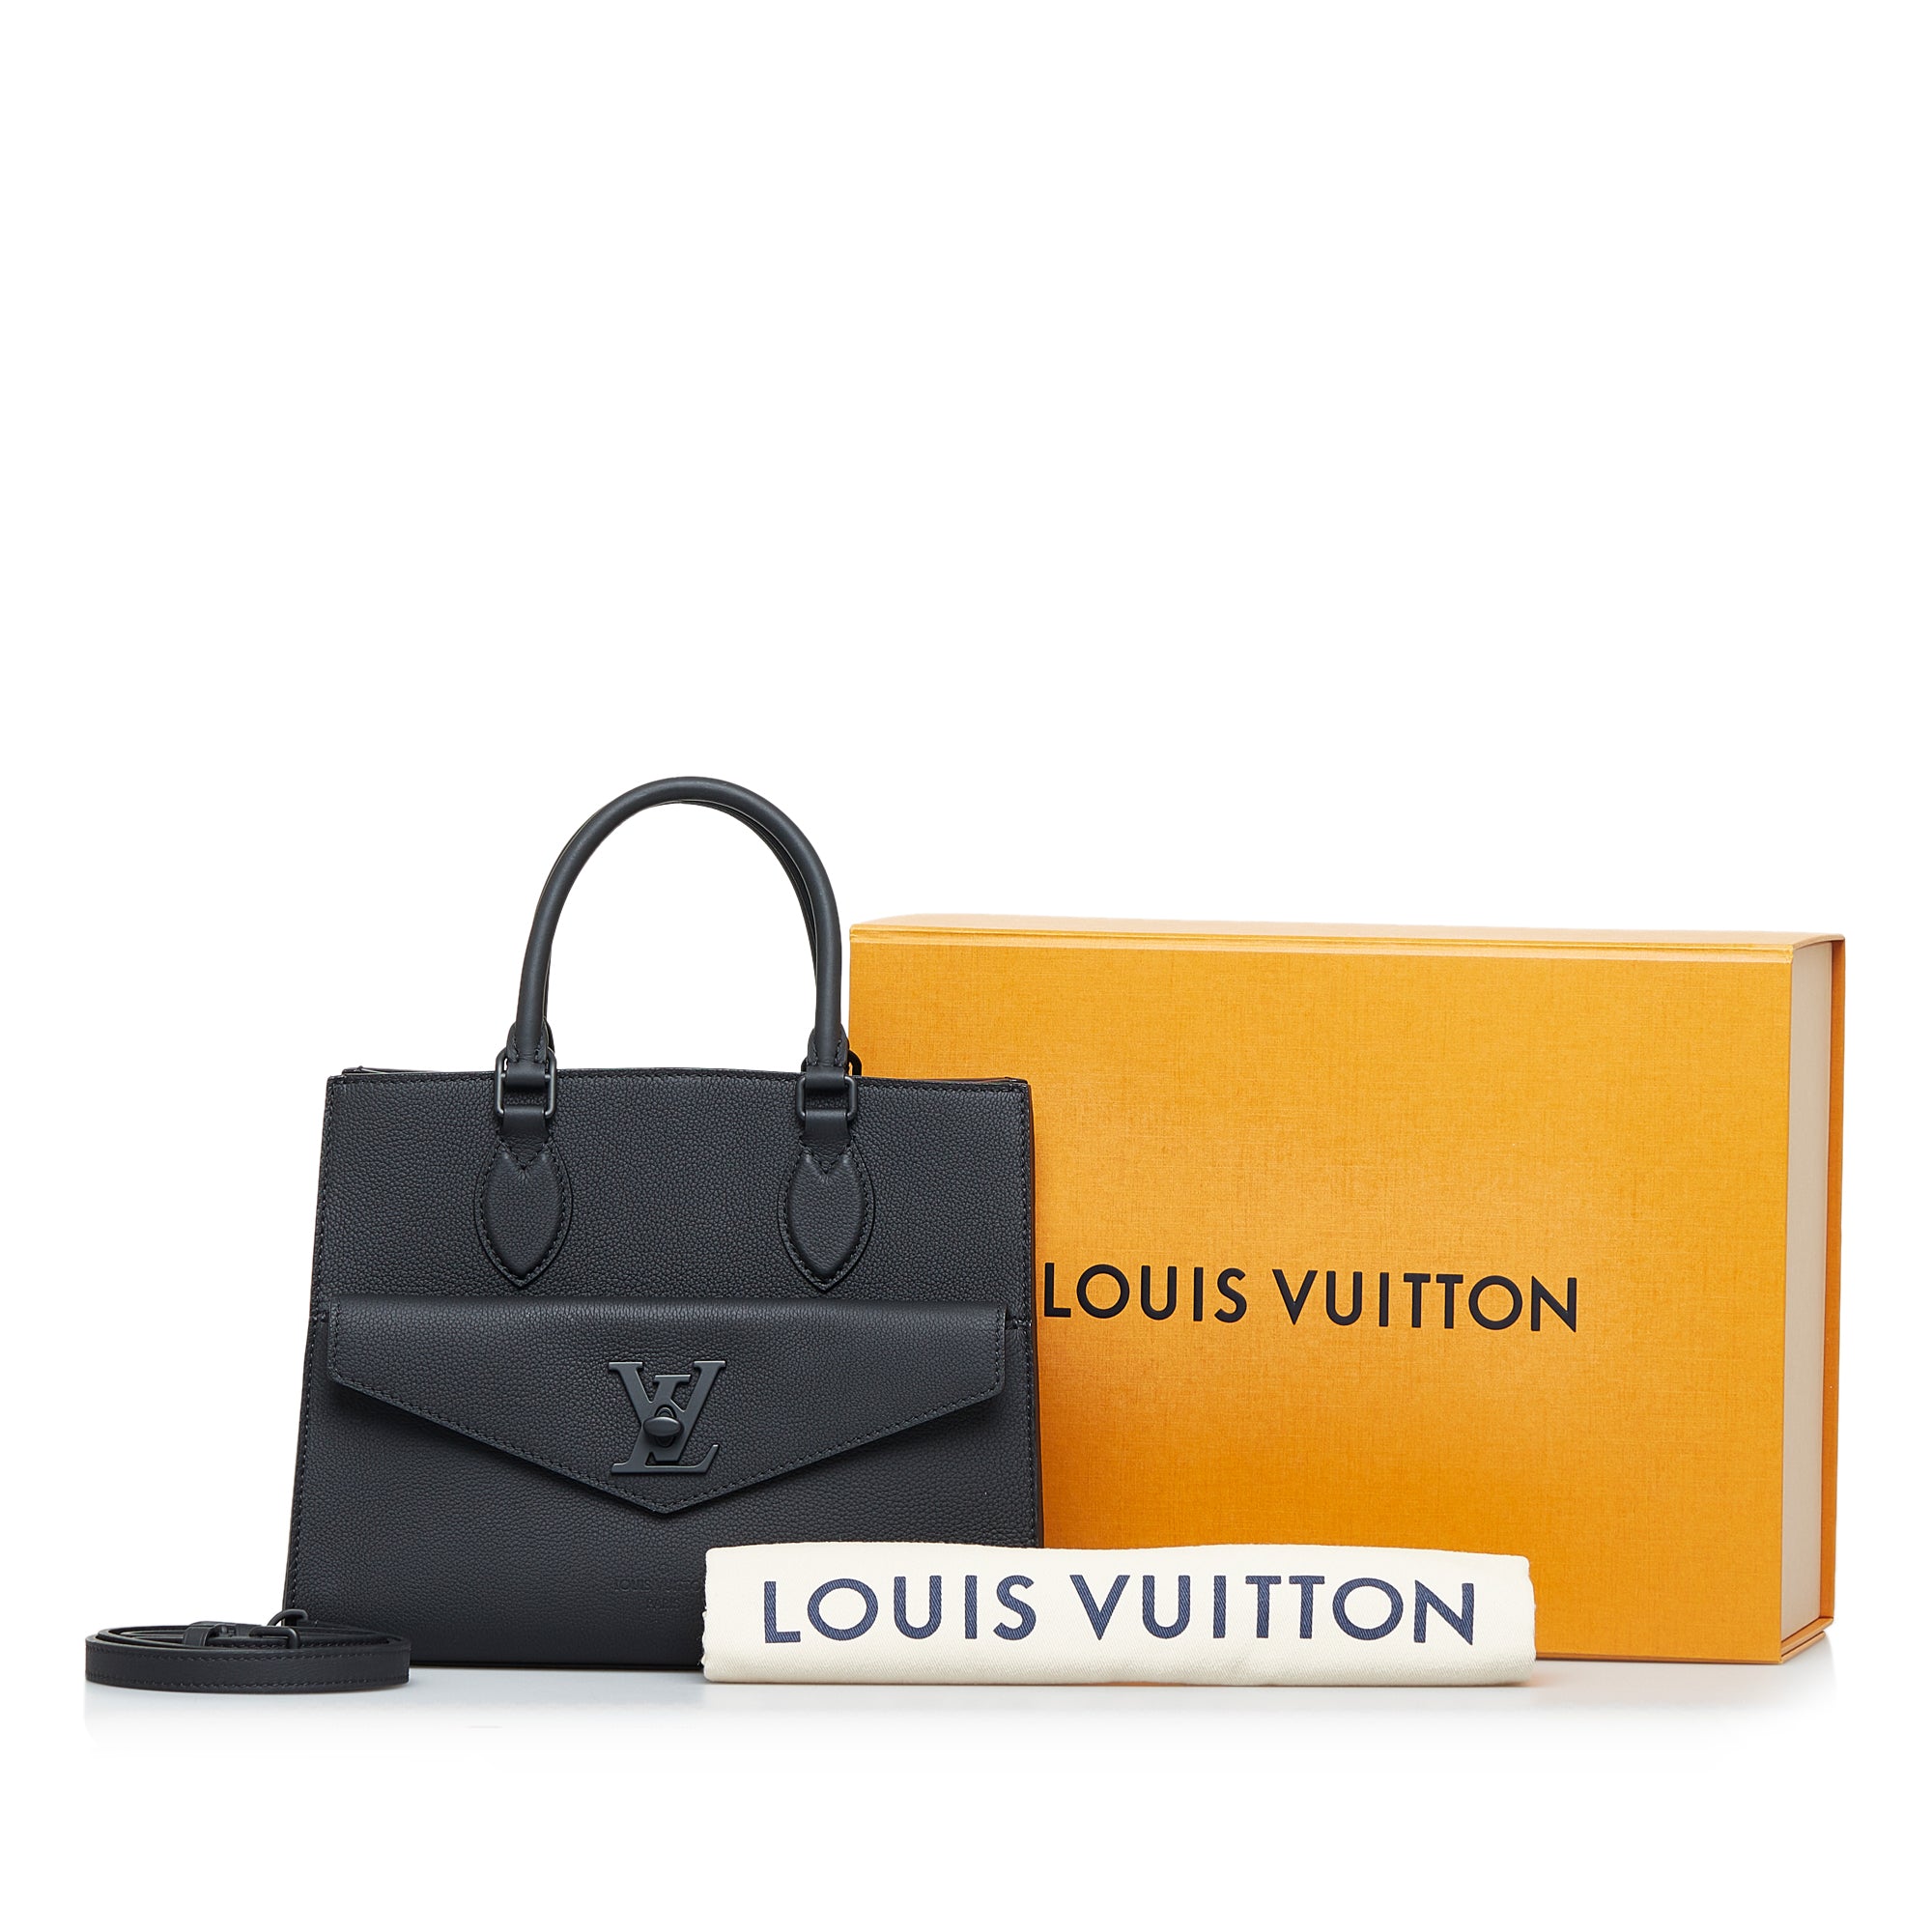 Black Louis Vuitton Lockme Tote PM Satchel